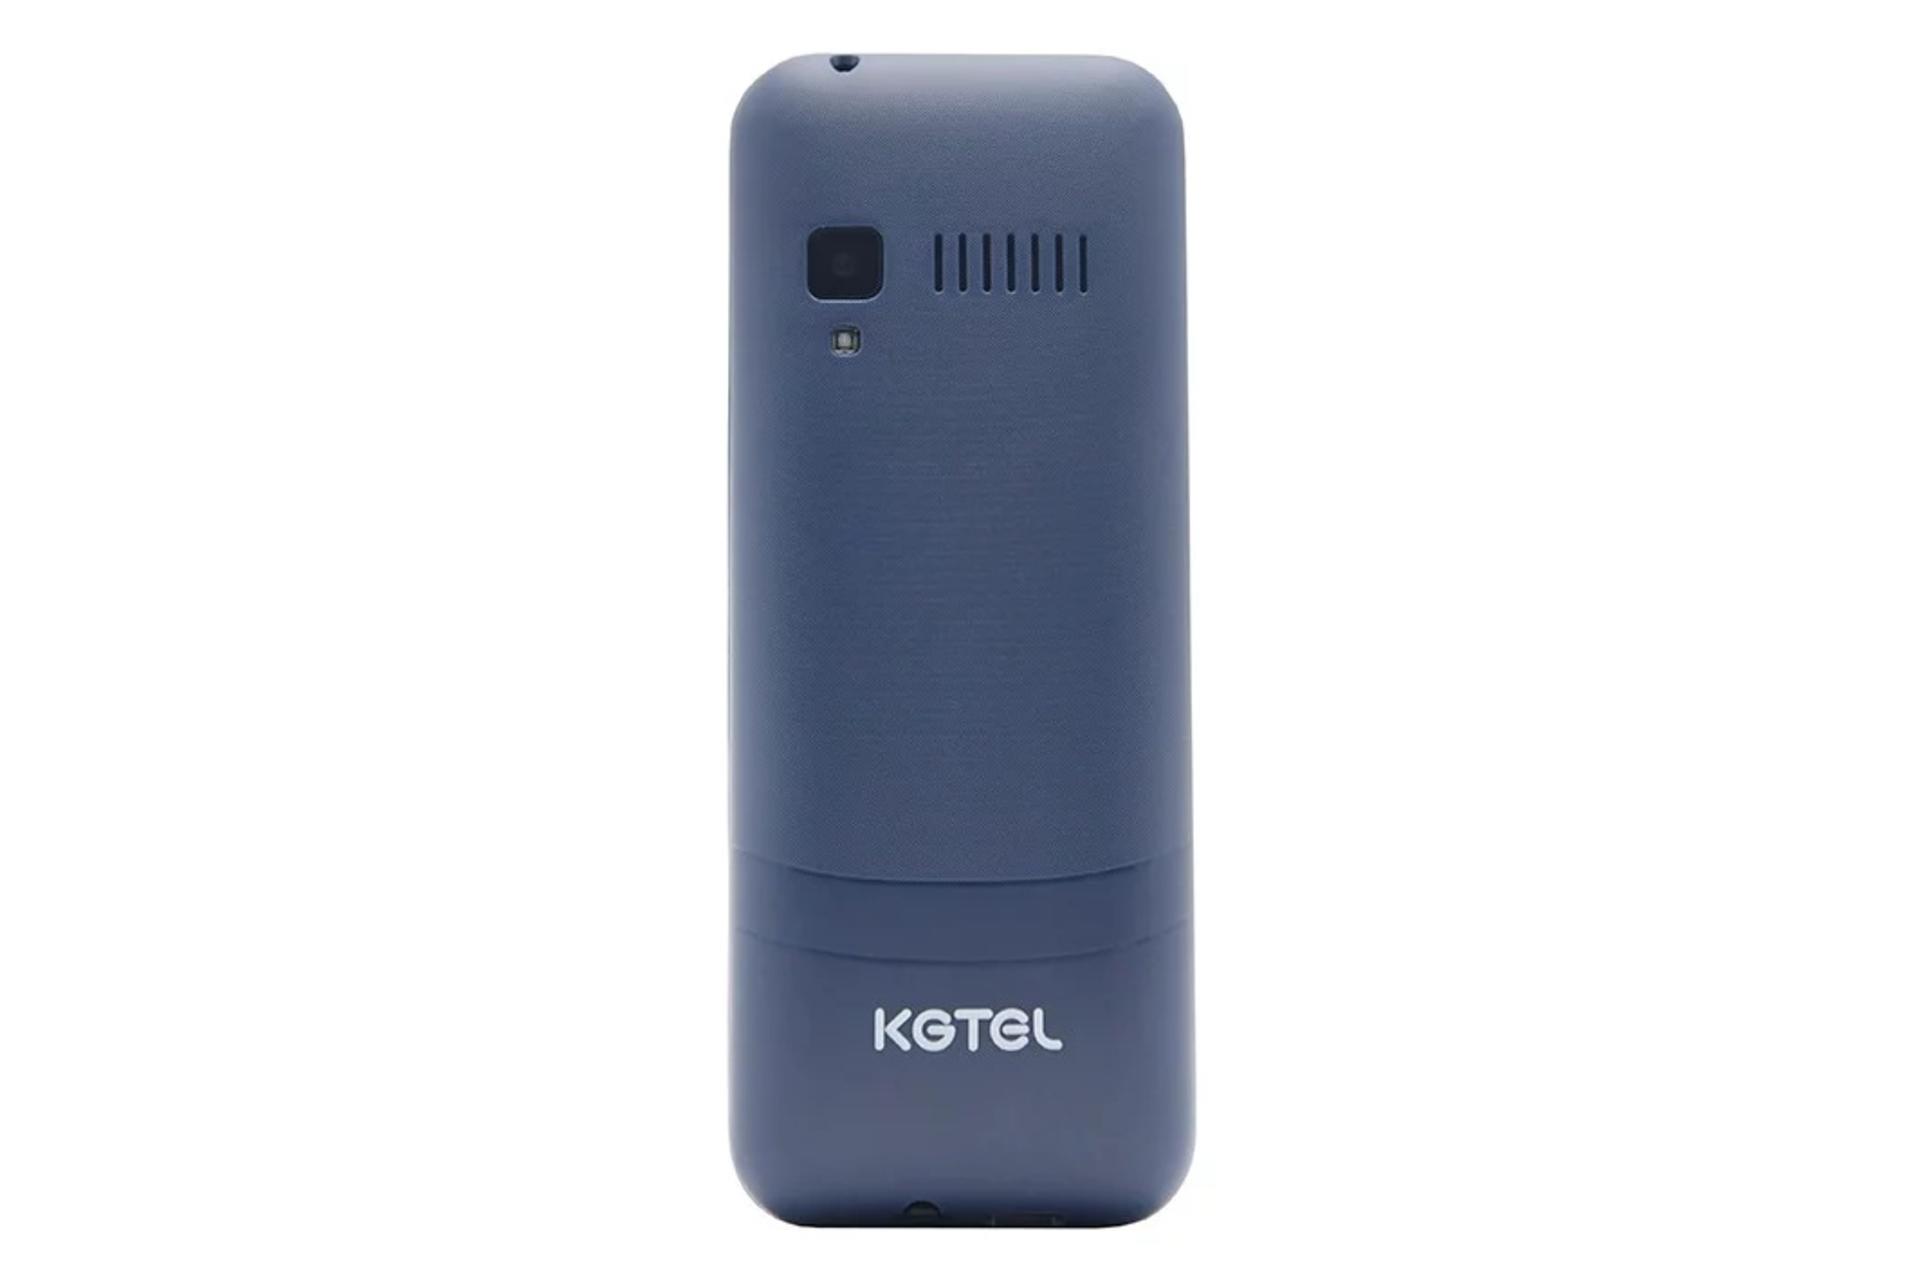 پنل پشت گوشی موبایل کاجیتل KGTEL K5